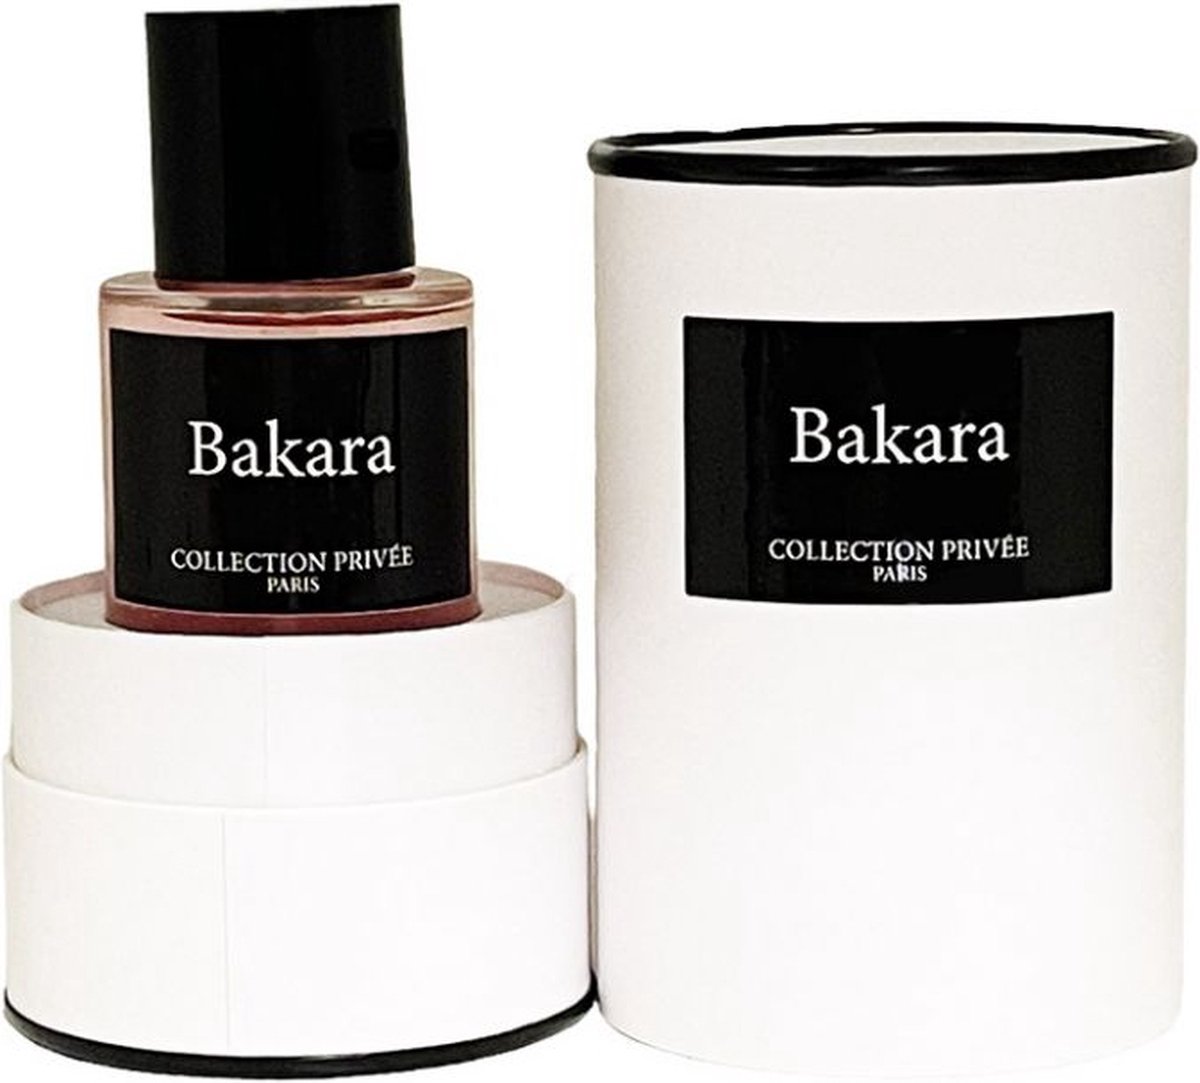 Collection Privee Paris Bakara 50 ml Eau de Parfum - Unisex